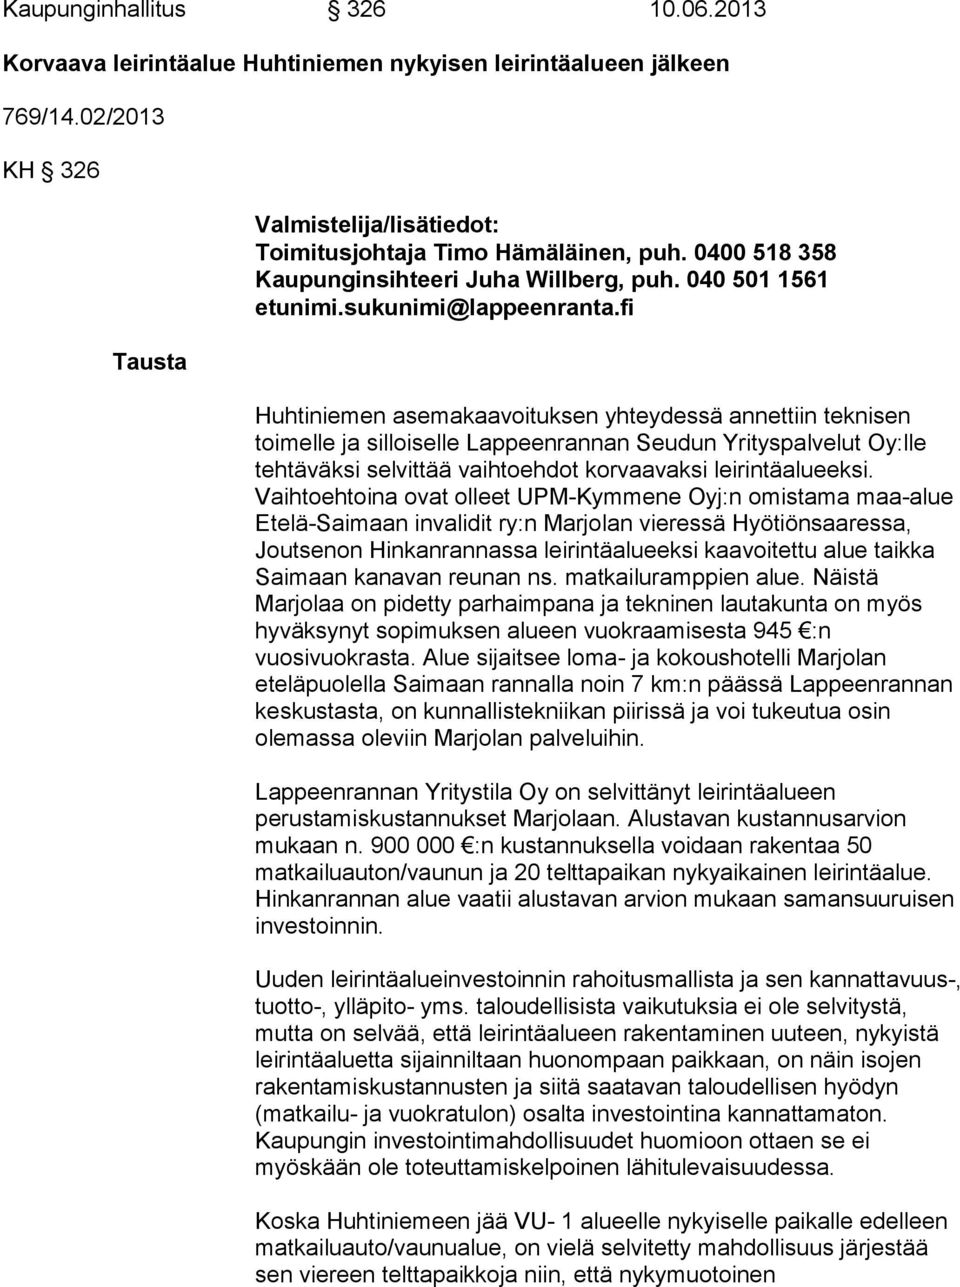 fi Huhtiniemen asemakaavoituksen yhteydessä annettiin teknisen toimelle ja silloiselle Lappeenrannan Seudun Yrityspalvelut Oy:lle tehtäväksi selvittää vaihtoehdot korvaavaksi leirintäalueeksi.